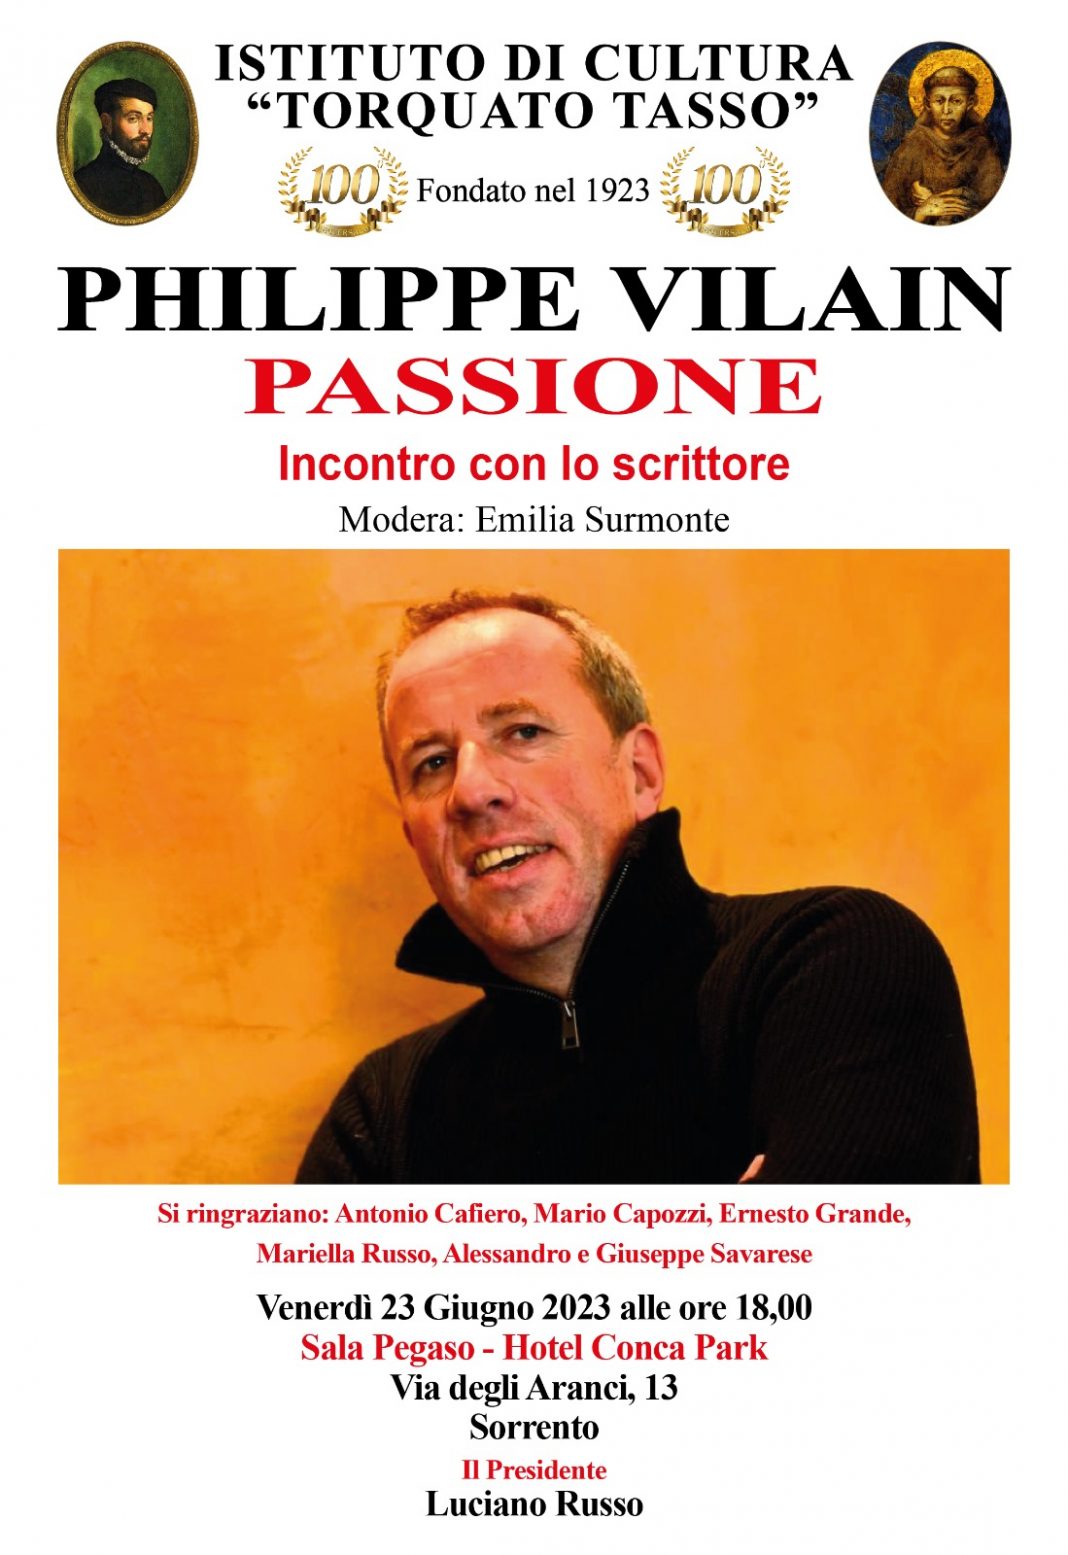 Philippe Vilain – Pupettahttps://www.exibart.com/repository/media/formidable/11/img/a27/Philippe-Vilain-Sorrento-1068x1555.jpg